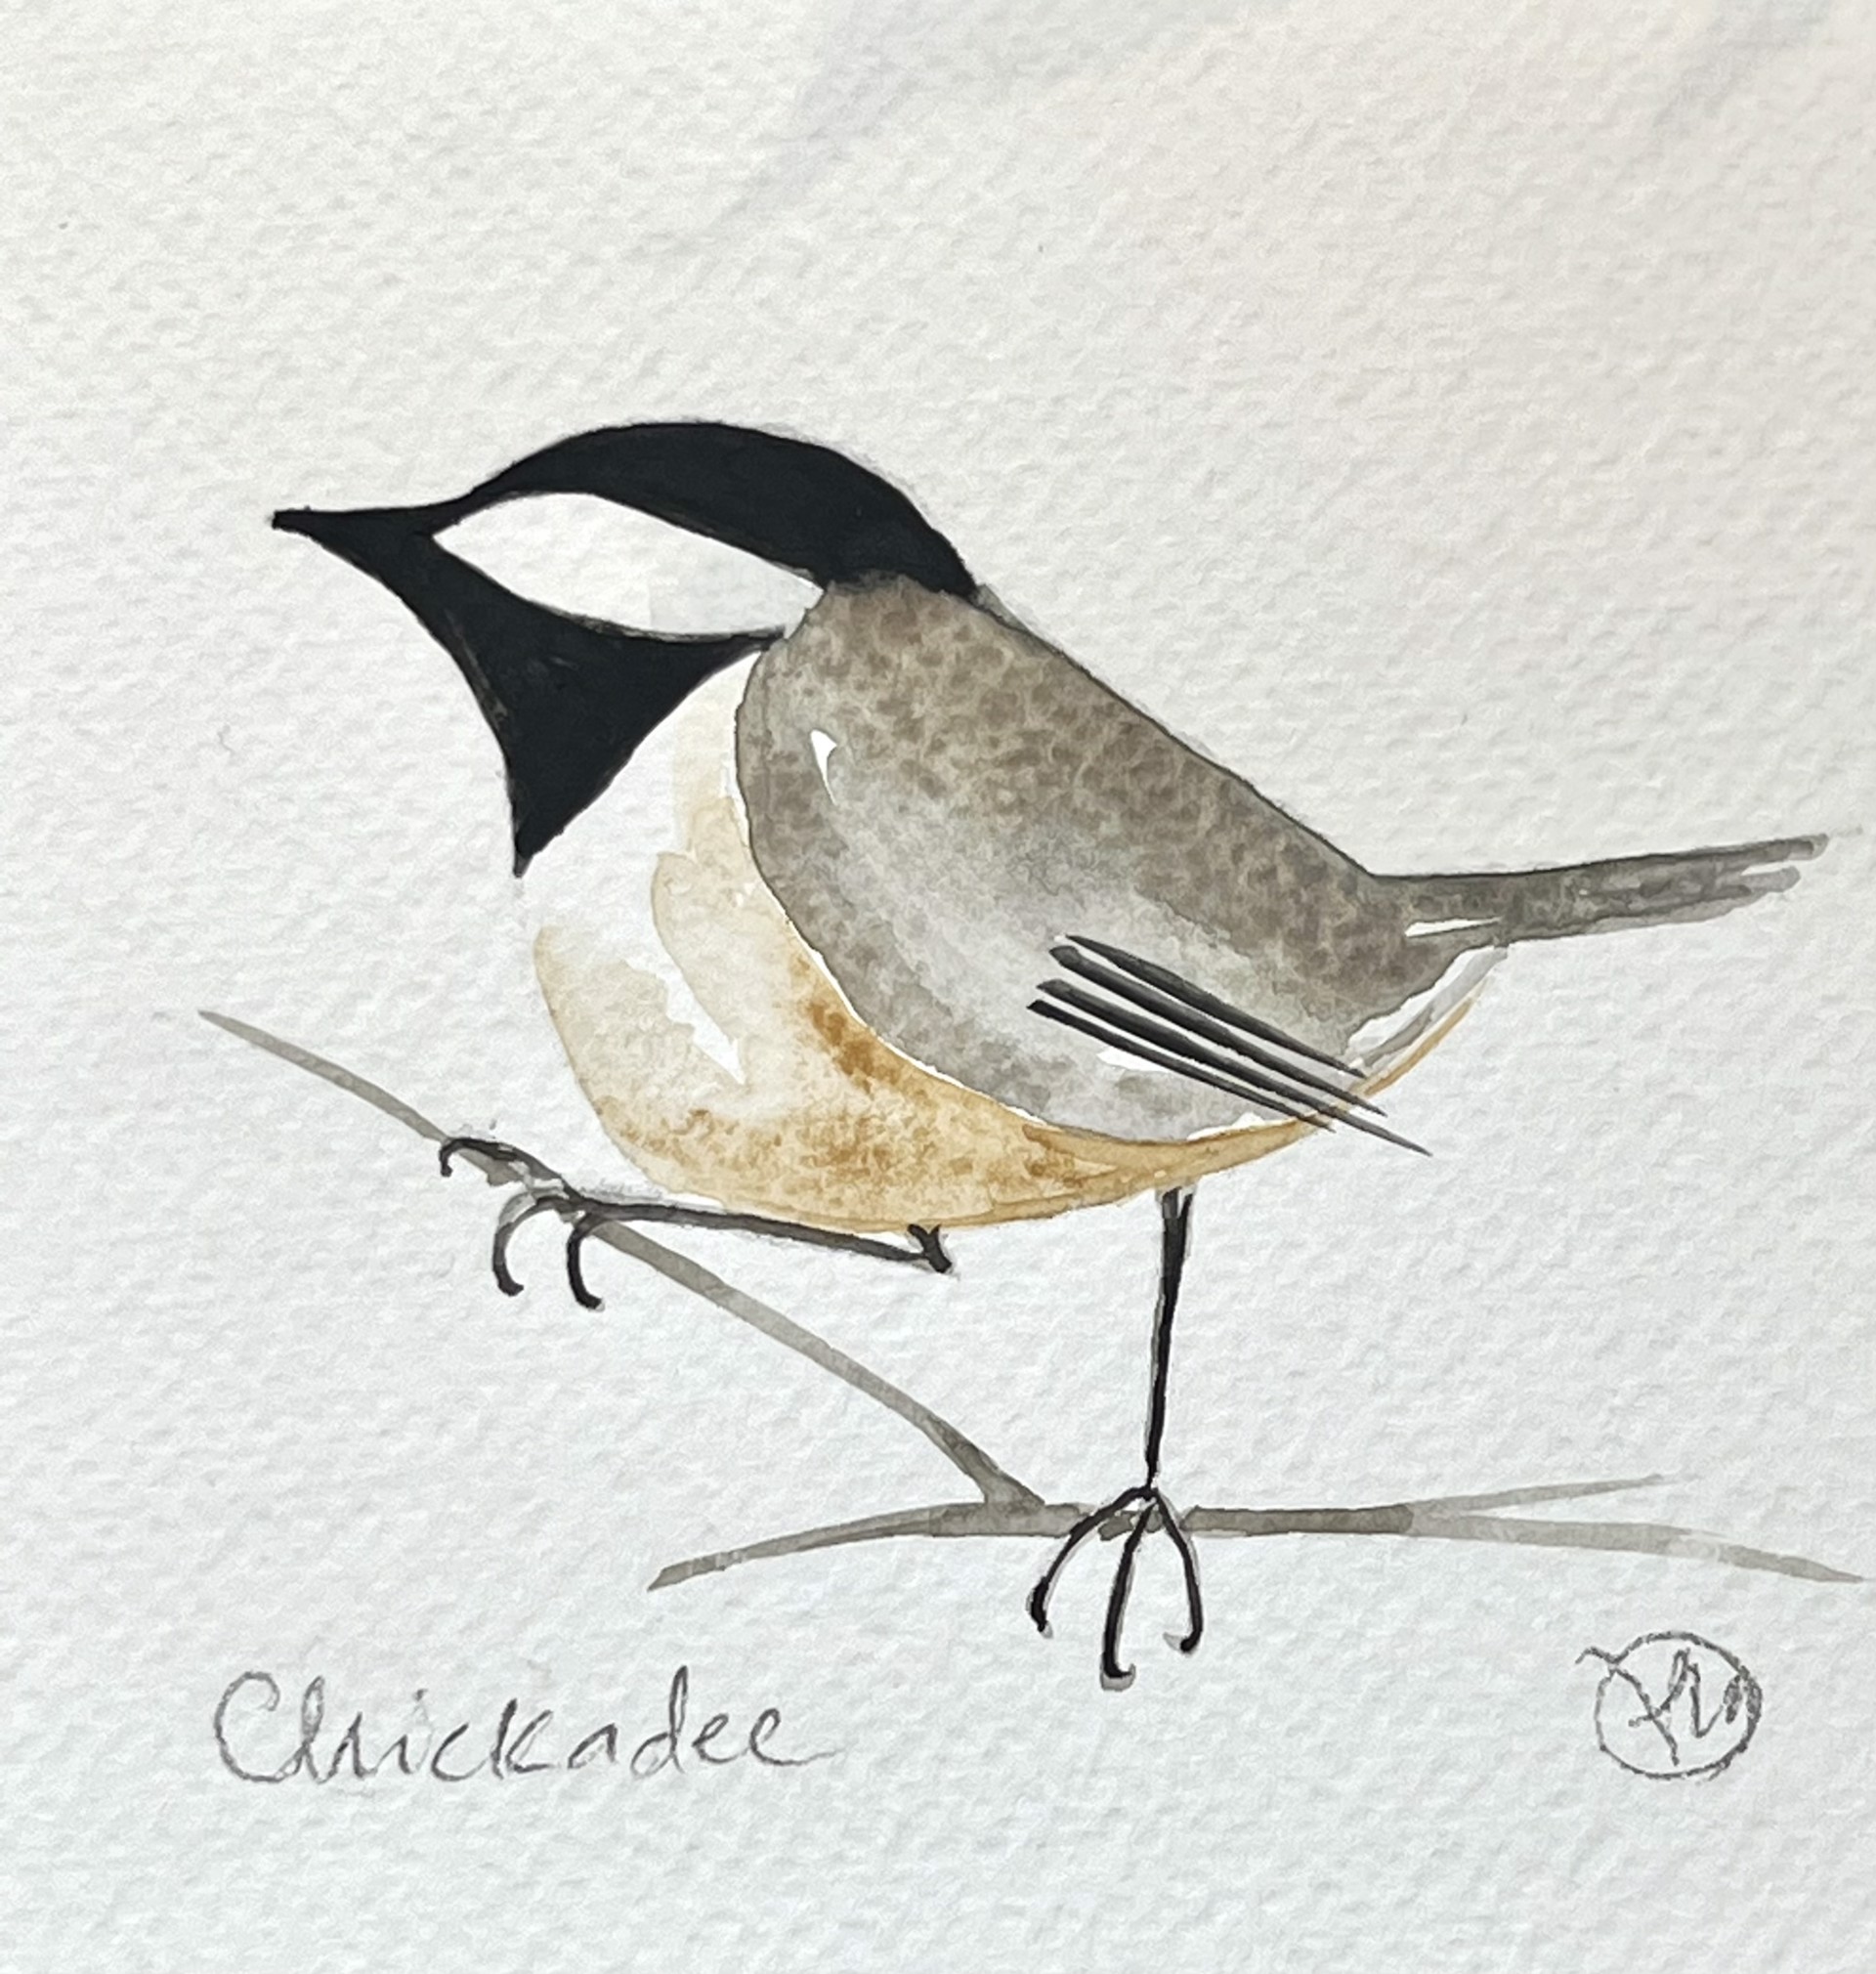 Chickadee by Paula Wallace